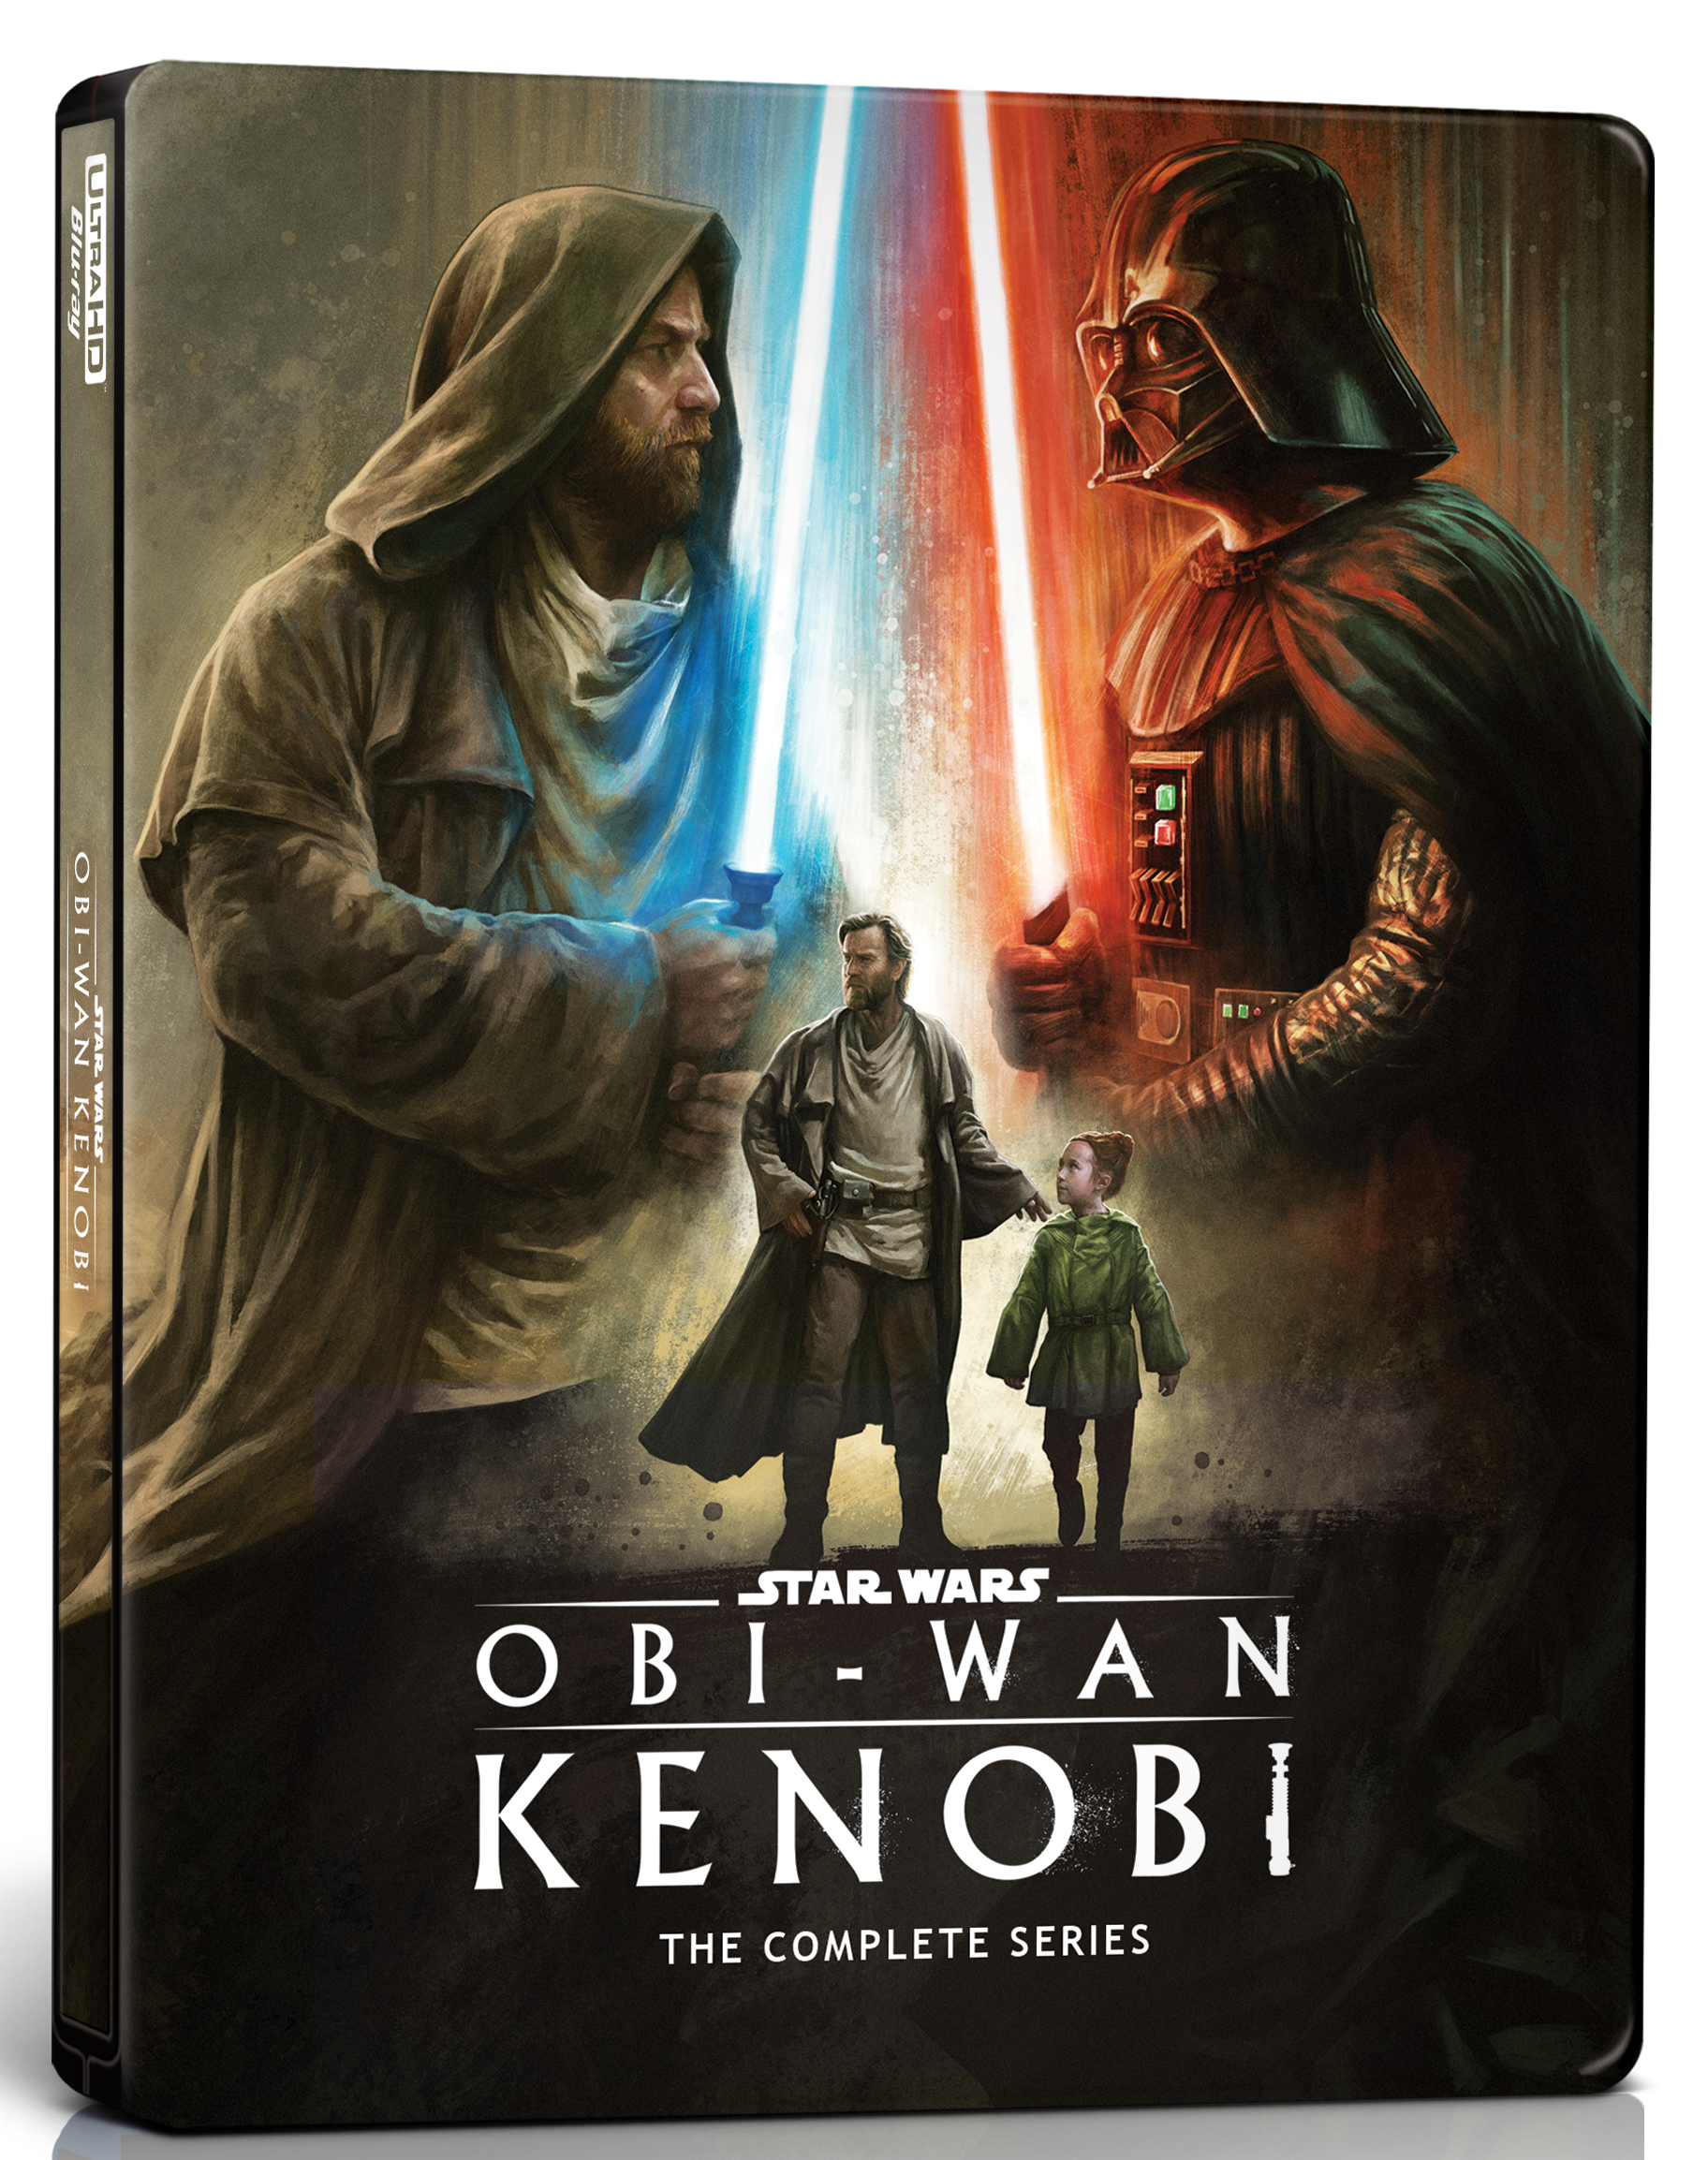 Artwork by Obi-Wan The Complete Series Steelbook